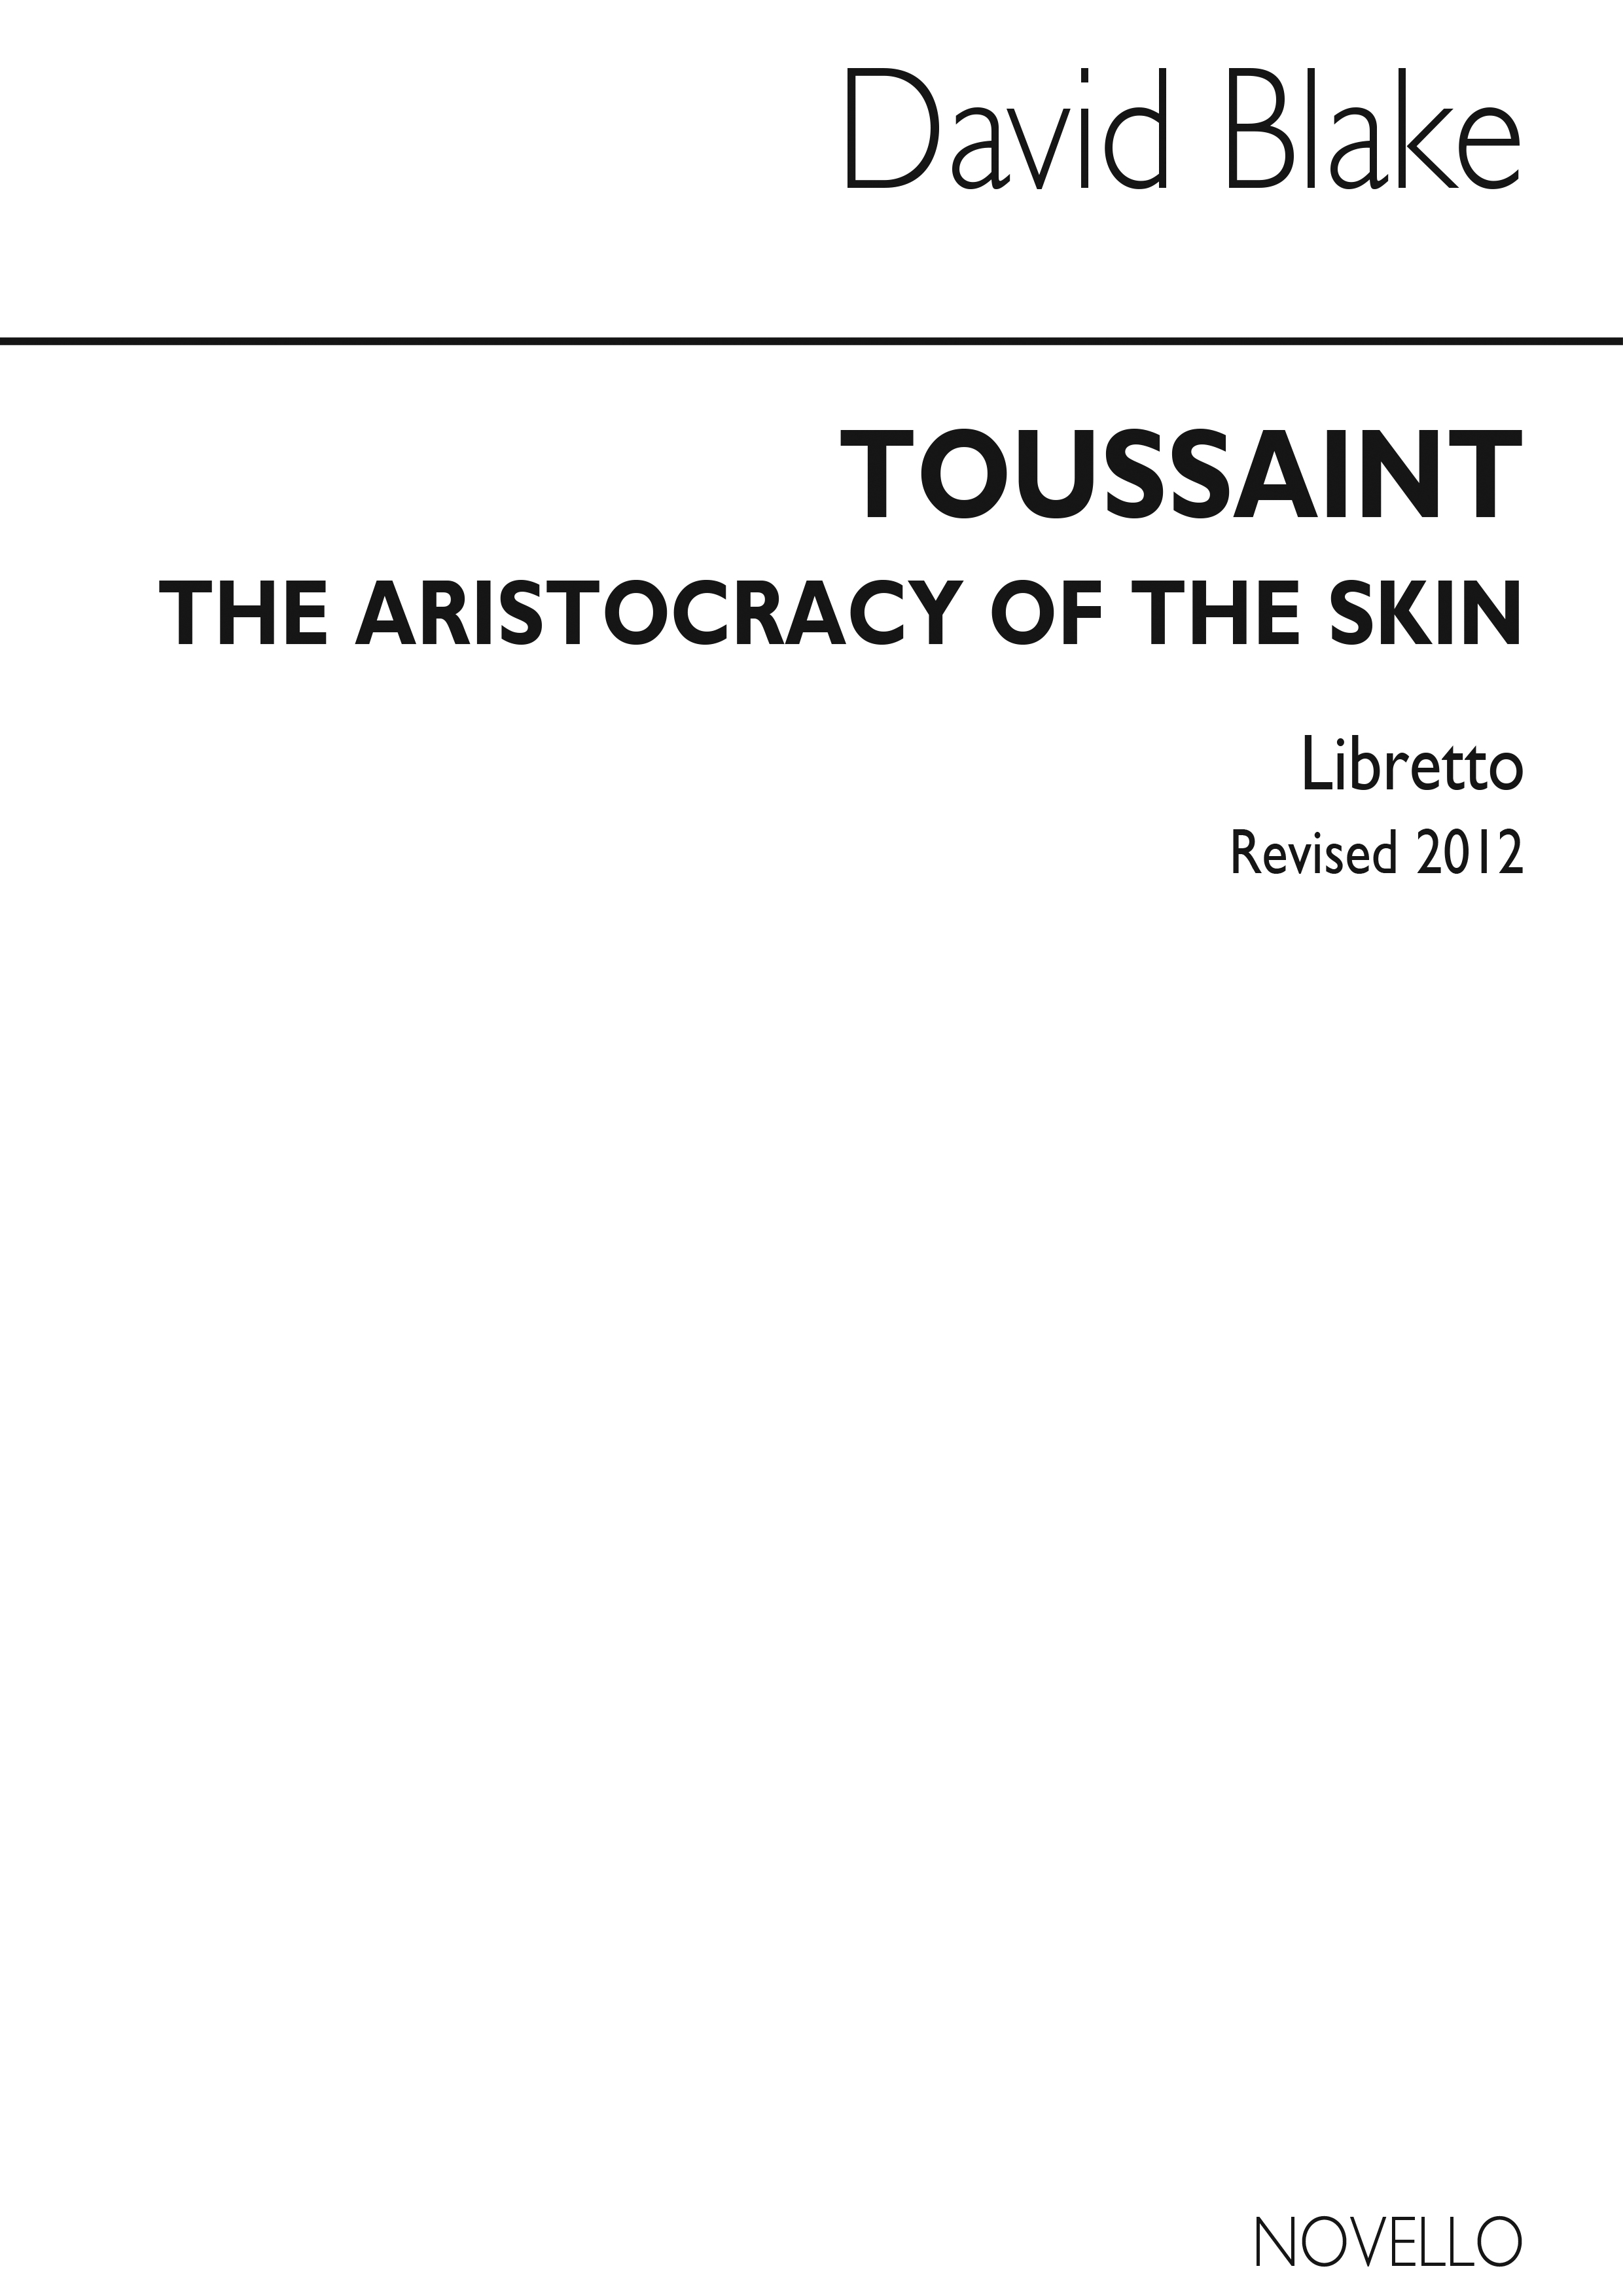 David Blake: Toussaint Aristocracy Of The Skin (Libretto)